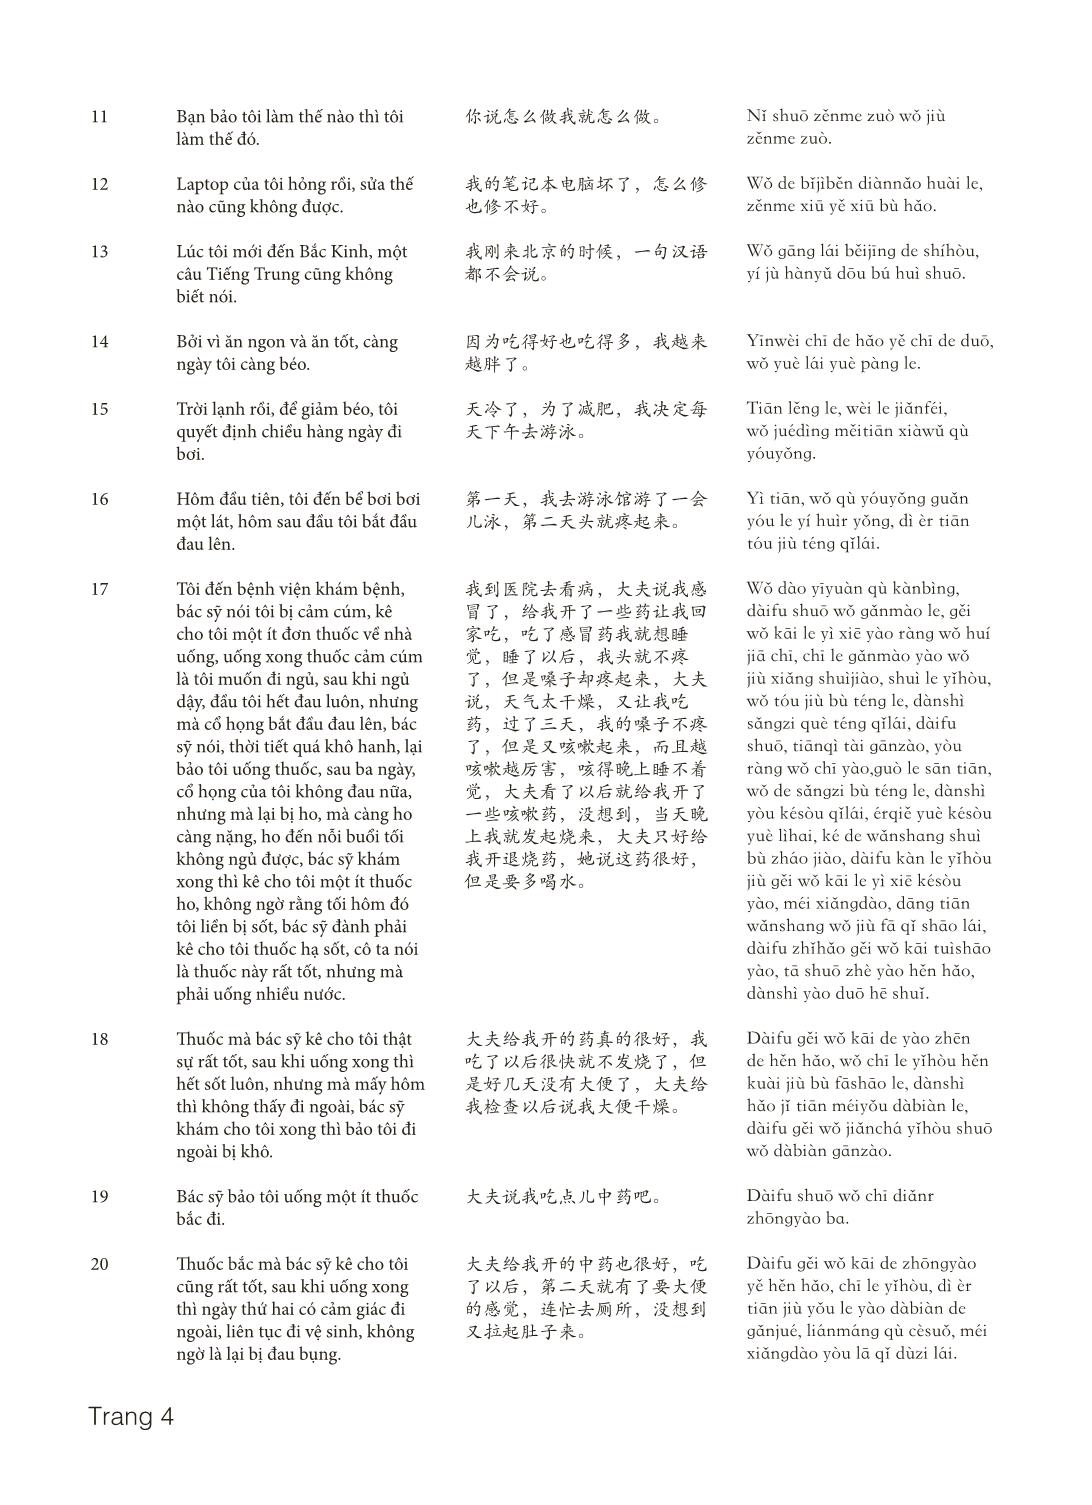 3000 Câu đàm thoại tiếng Hoa - Phần 28 trang 4